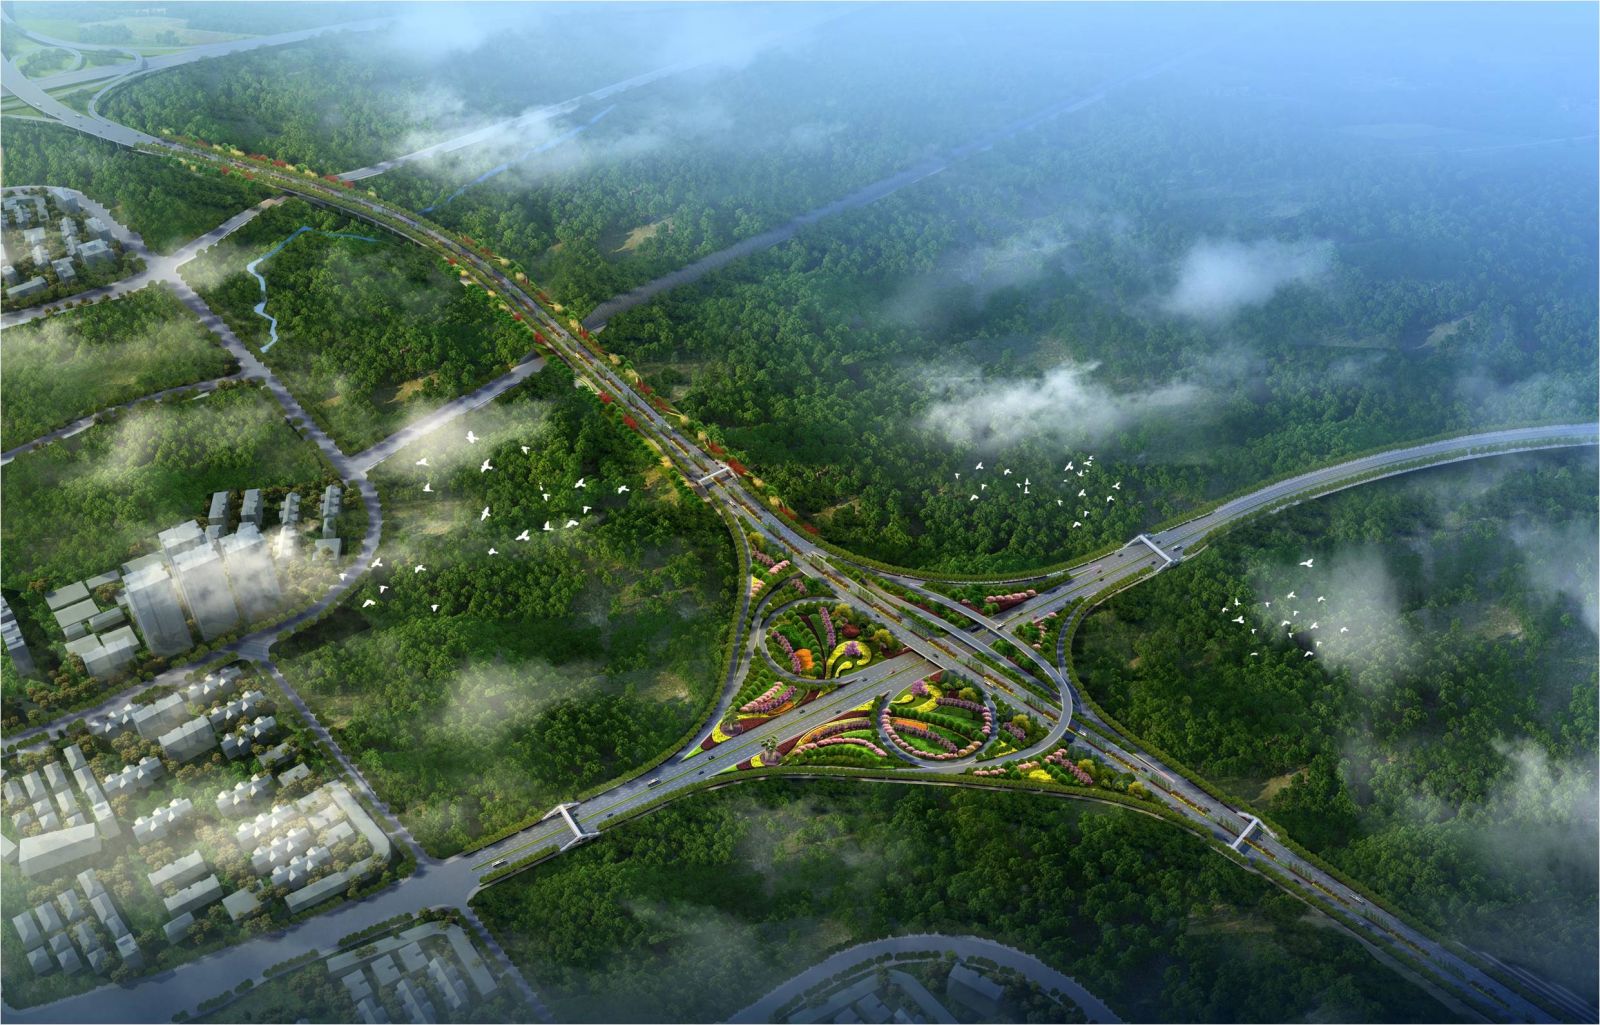 园冶杯专业奖：机南联络道东延伸段工程绿化项目设计